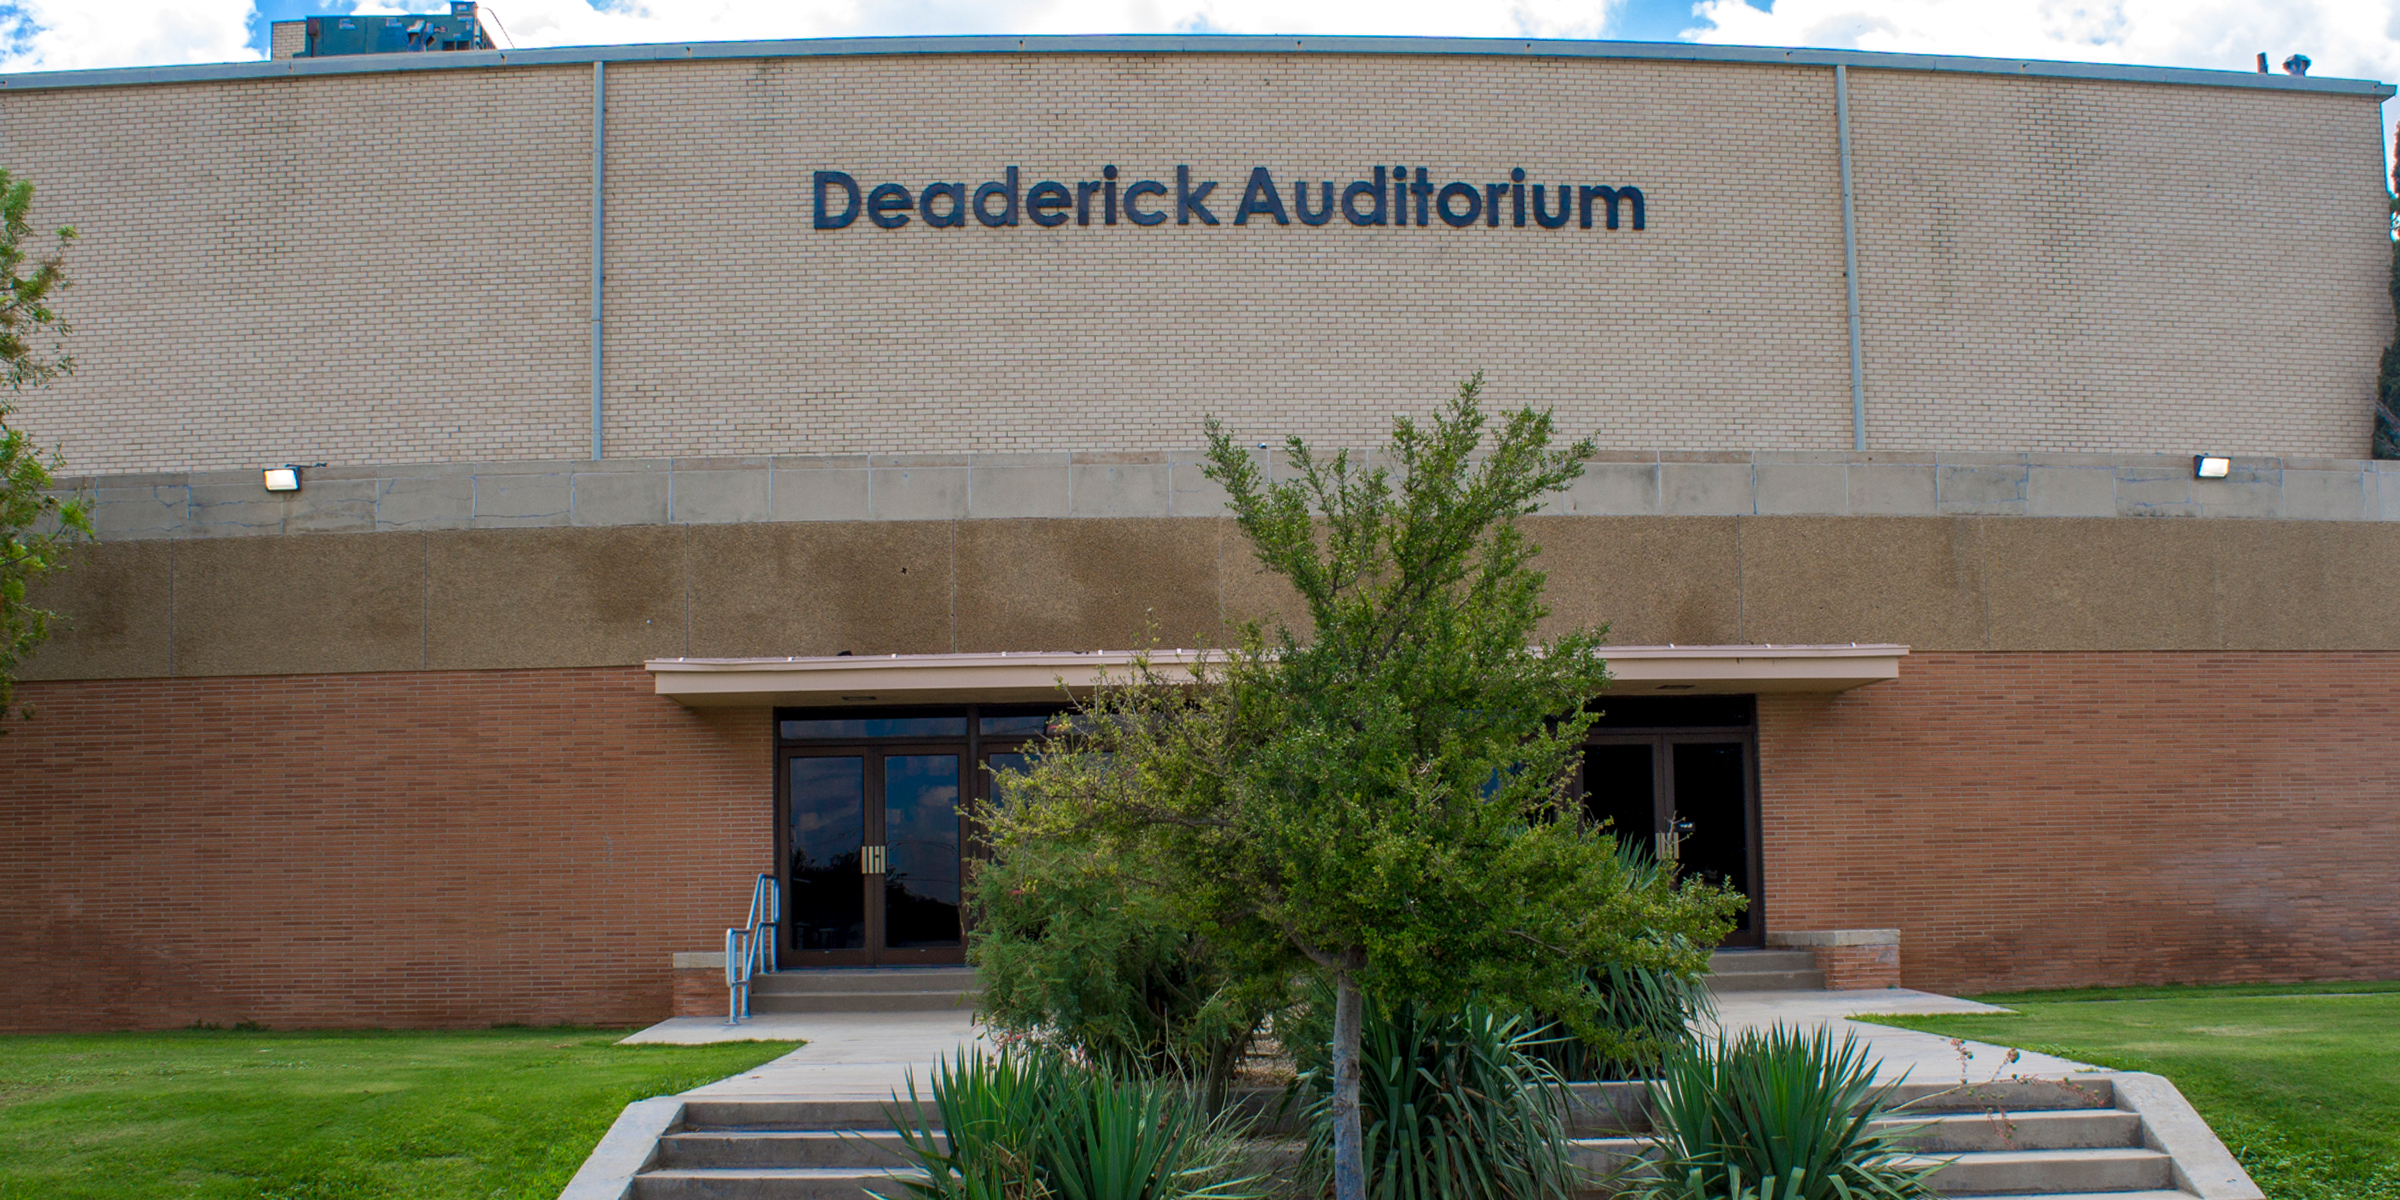 Deaderick-Auditorium-Rentals-Images-2.jpg